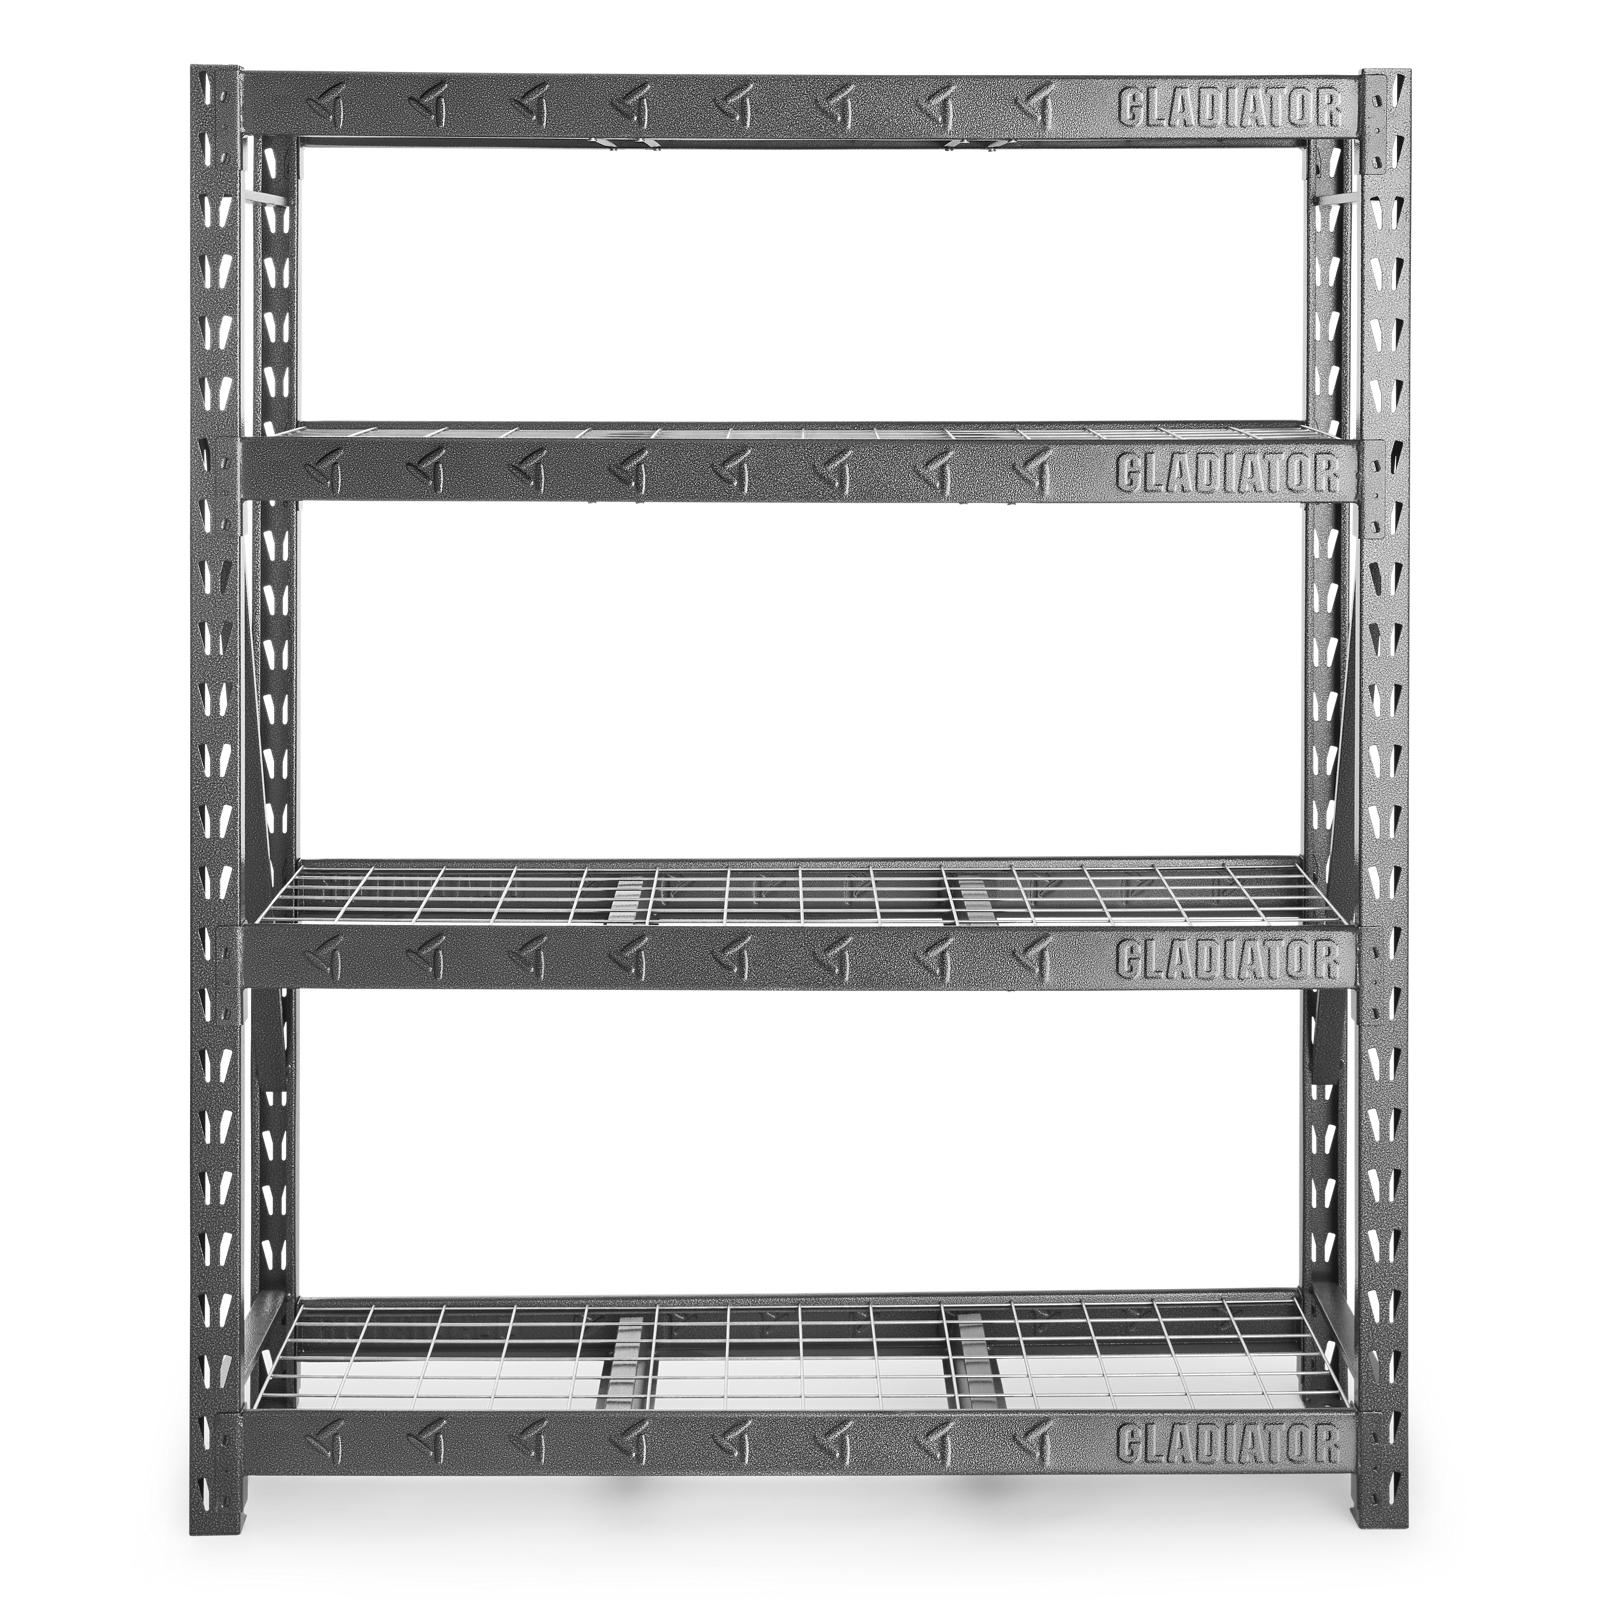 Die Storage Rack (173906) 2x4 1,500 lb. Capacity